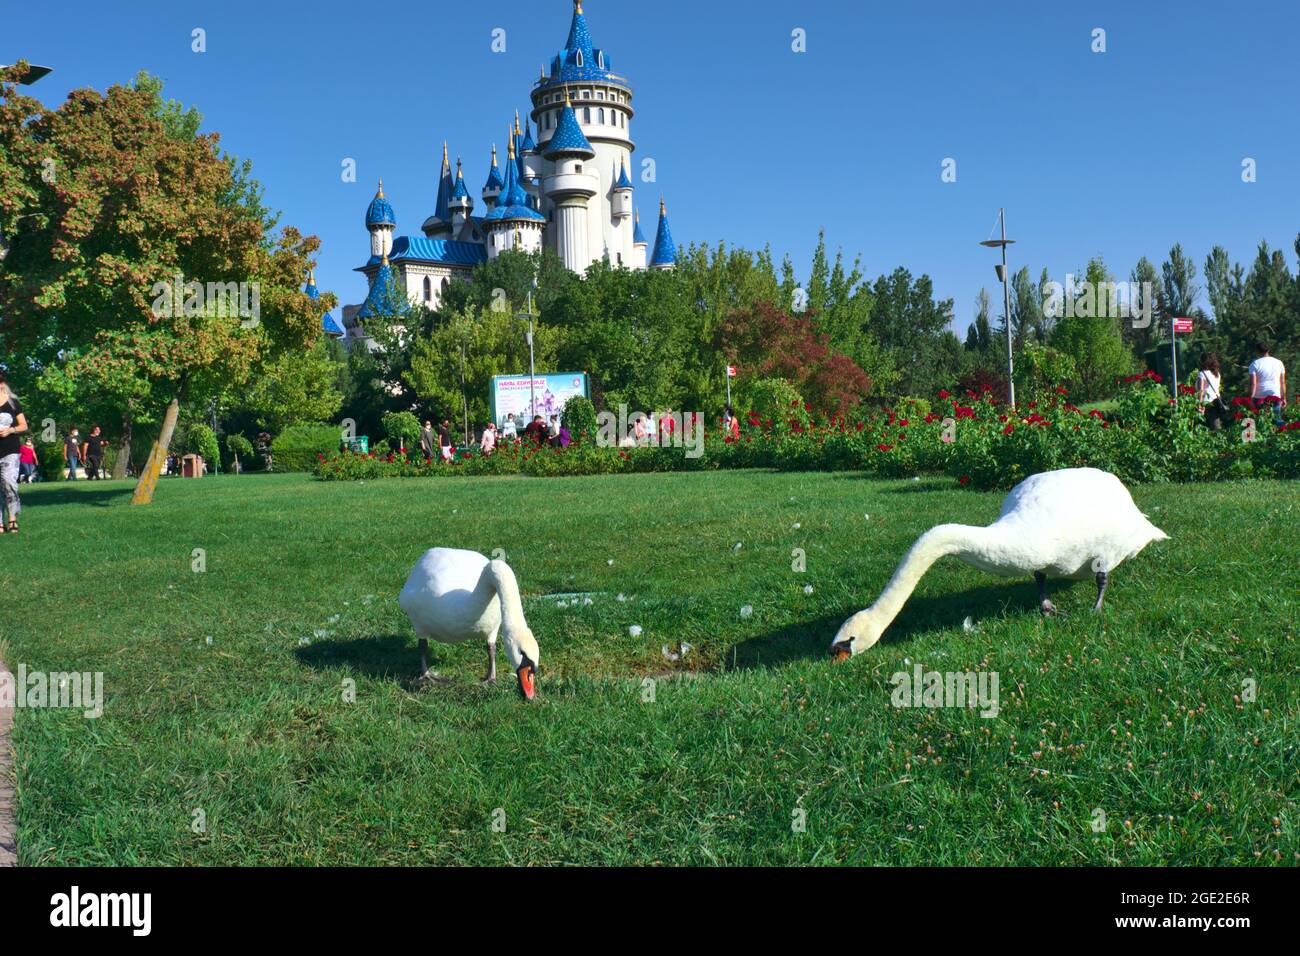 Wunderschöne zwei weiße Schwäne, die beim Sunny Day vor einem Blue Castle Gras fressen Stockfoto